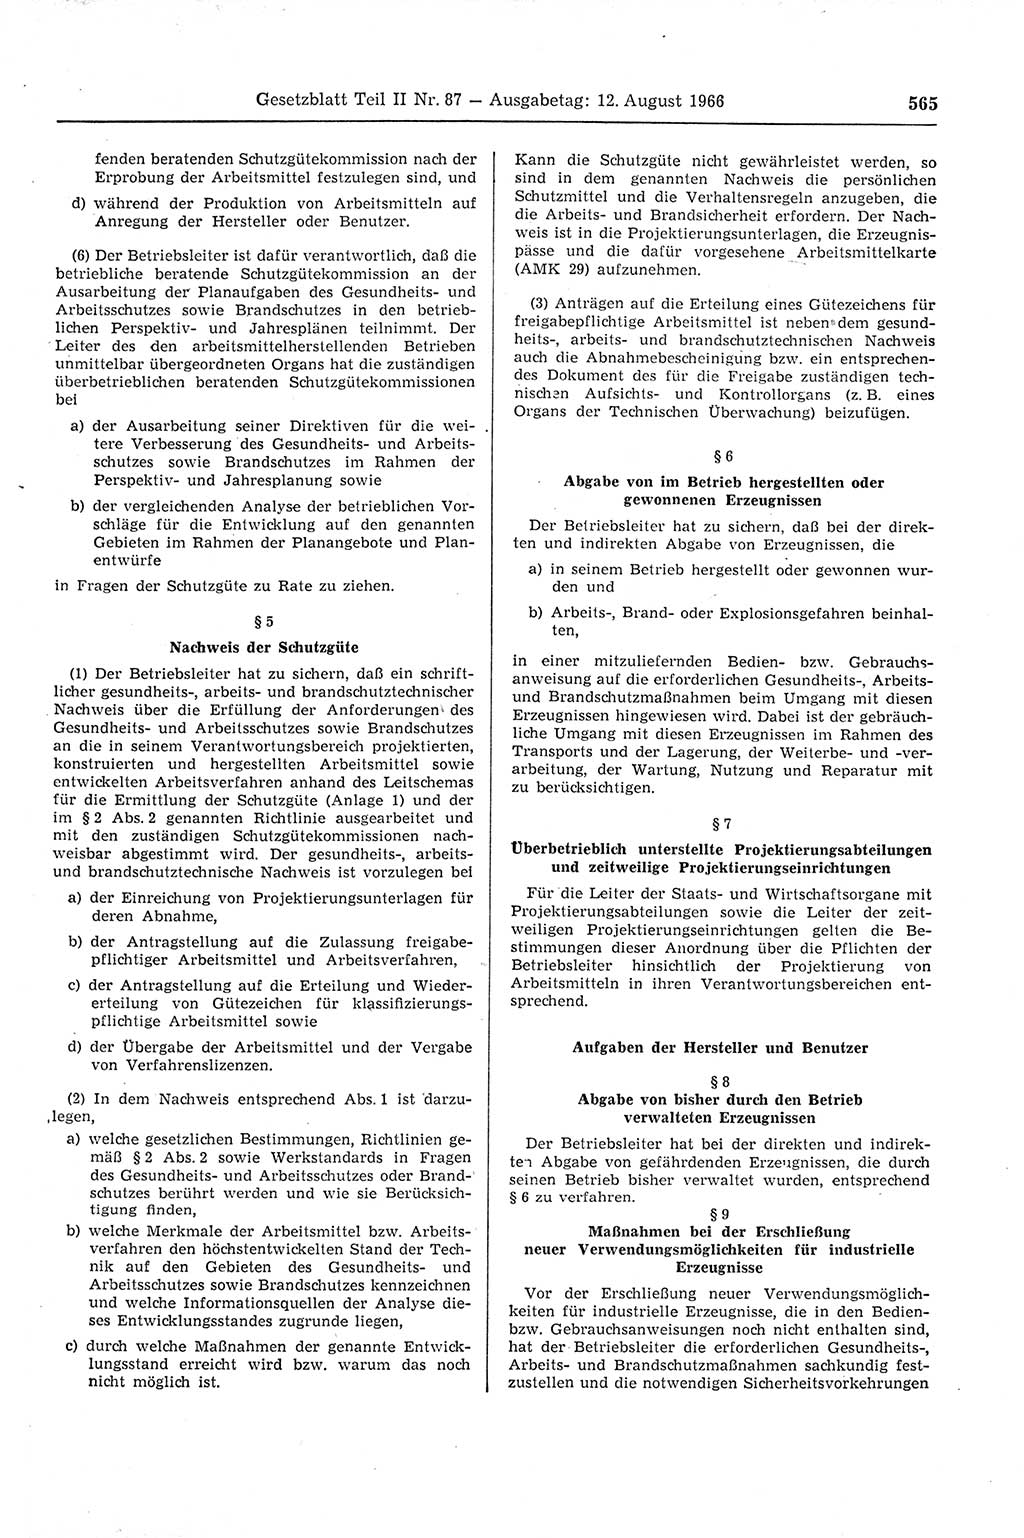 Gesetzblatt (GBl.) der Deutschen Demokratischen Republik (DDR) Teil ⅠⅠ 1966, Seite 565 (GBl. DDR ⅠⅠ 1966, S. 565)